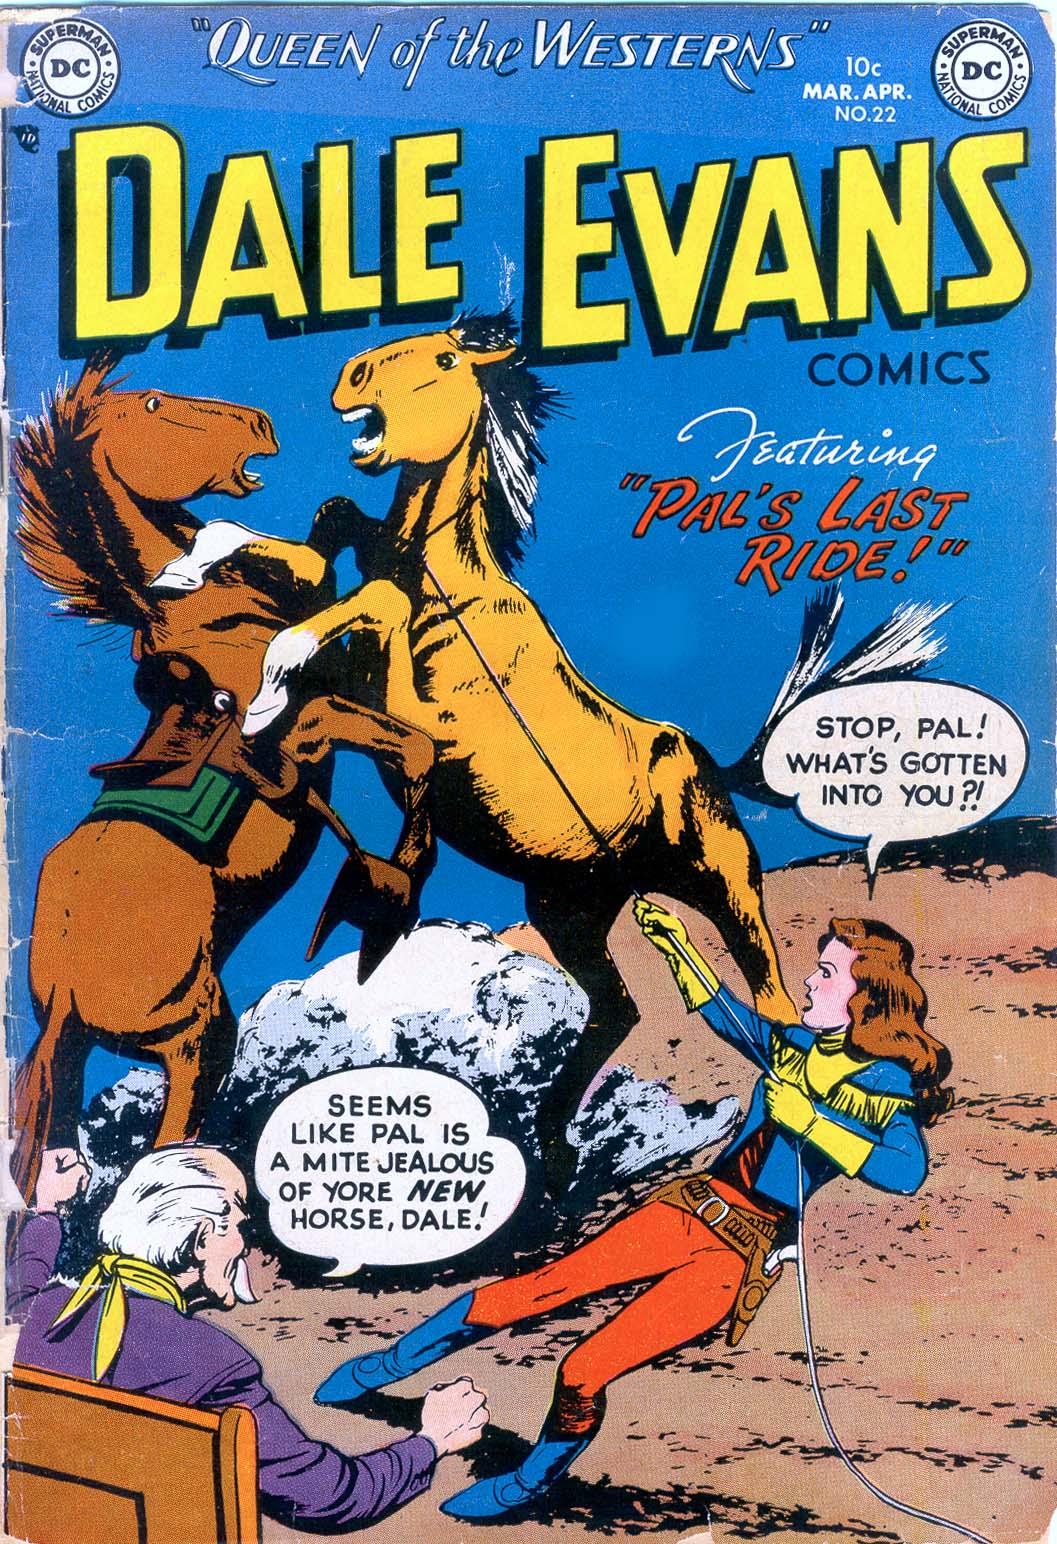 Dale Evans Comics Vol. 1 #22